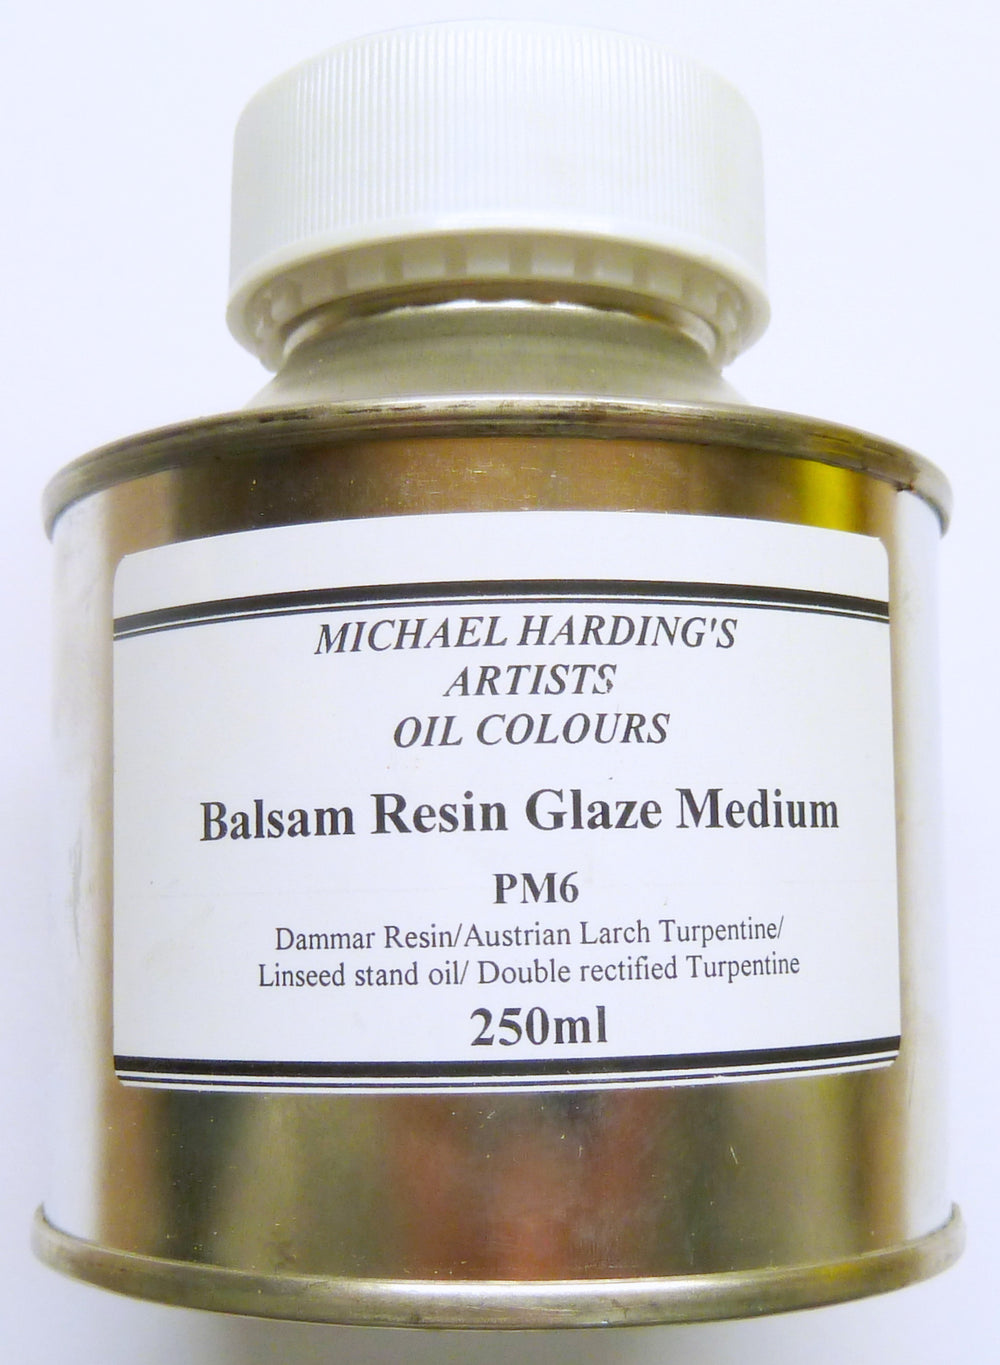 Balsam Resin Glaze Medium